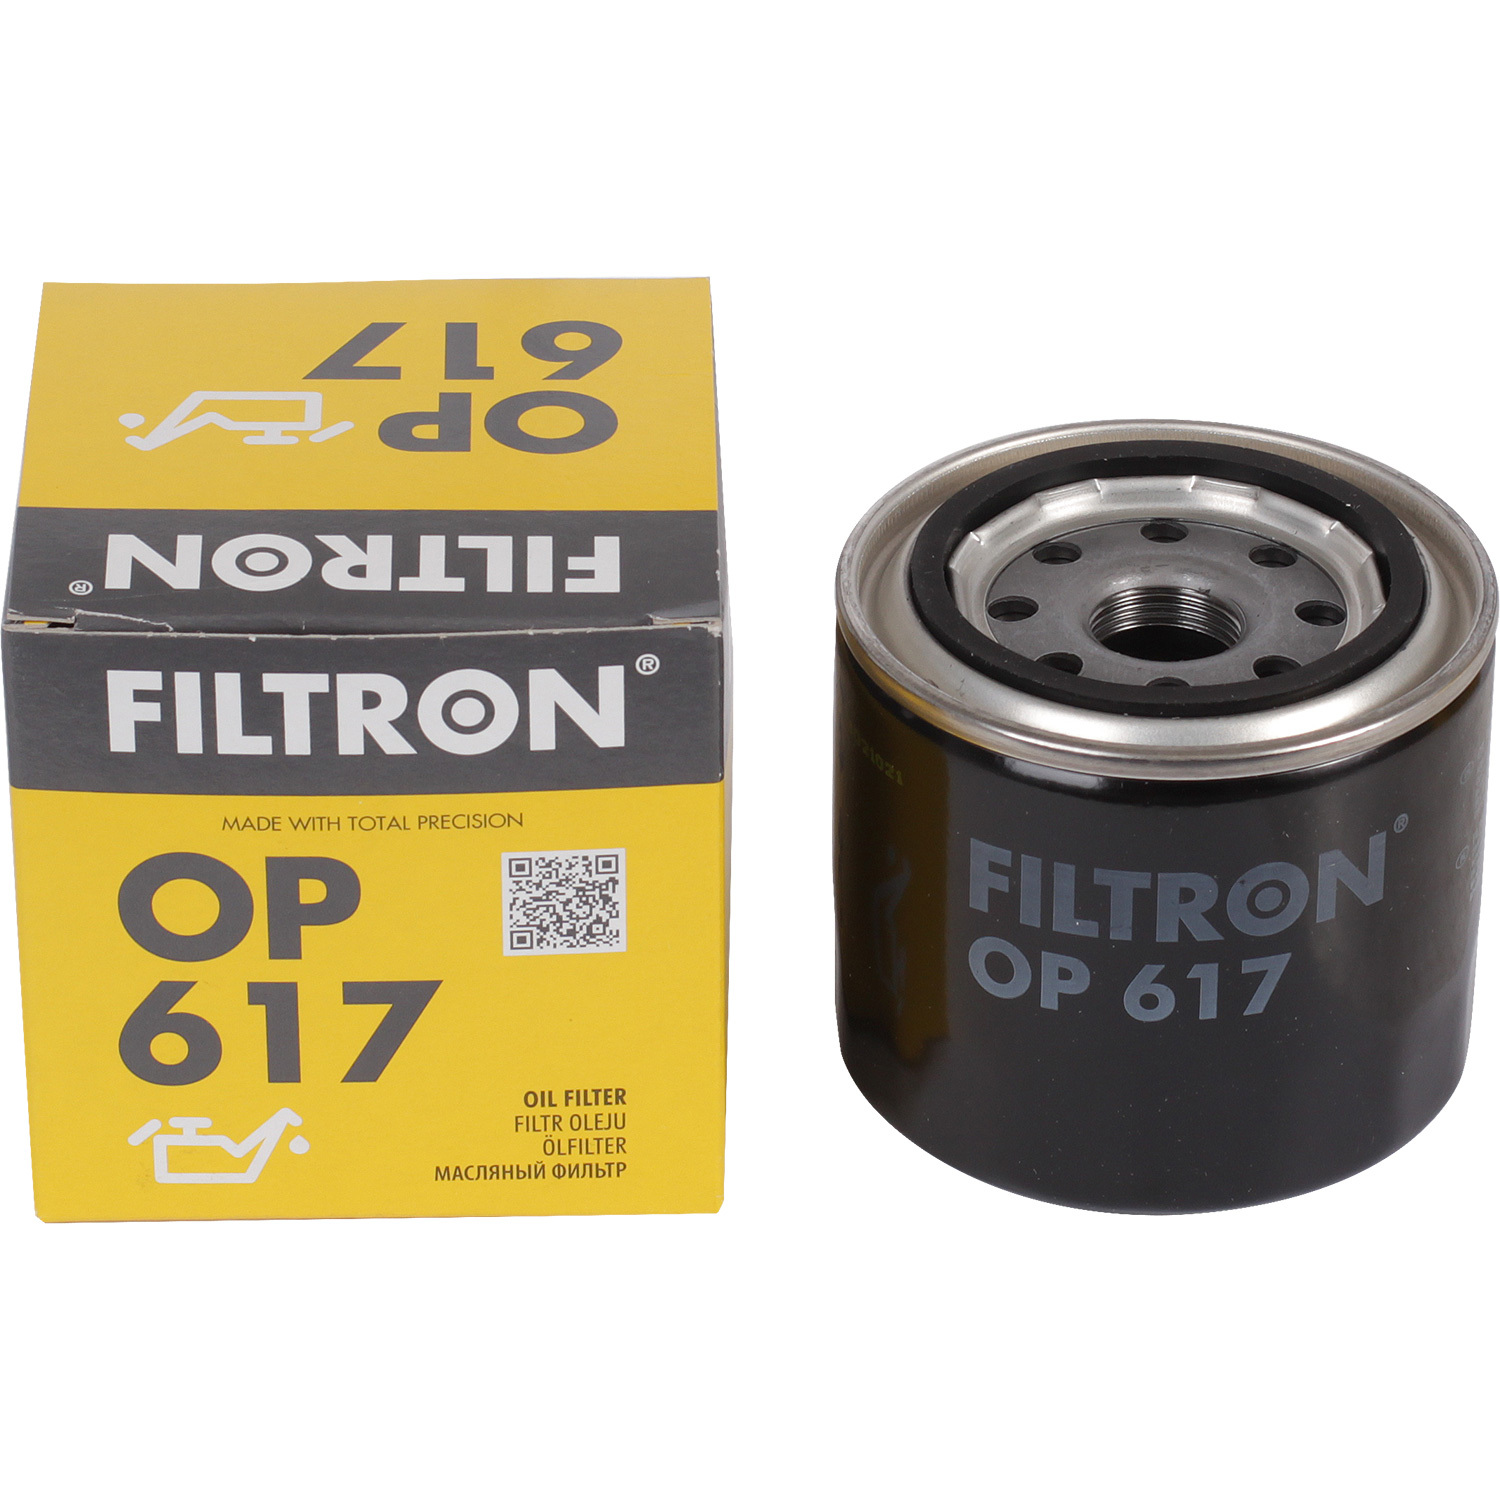 Фильтры Filtron Фильтр масляный Filtron OP617 фильтры filtron фильтр масляный filtron op617